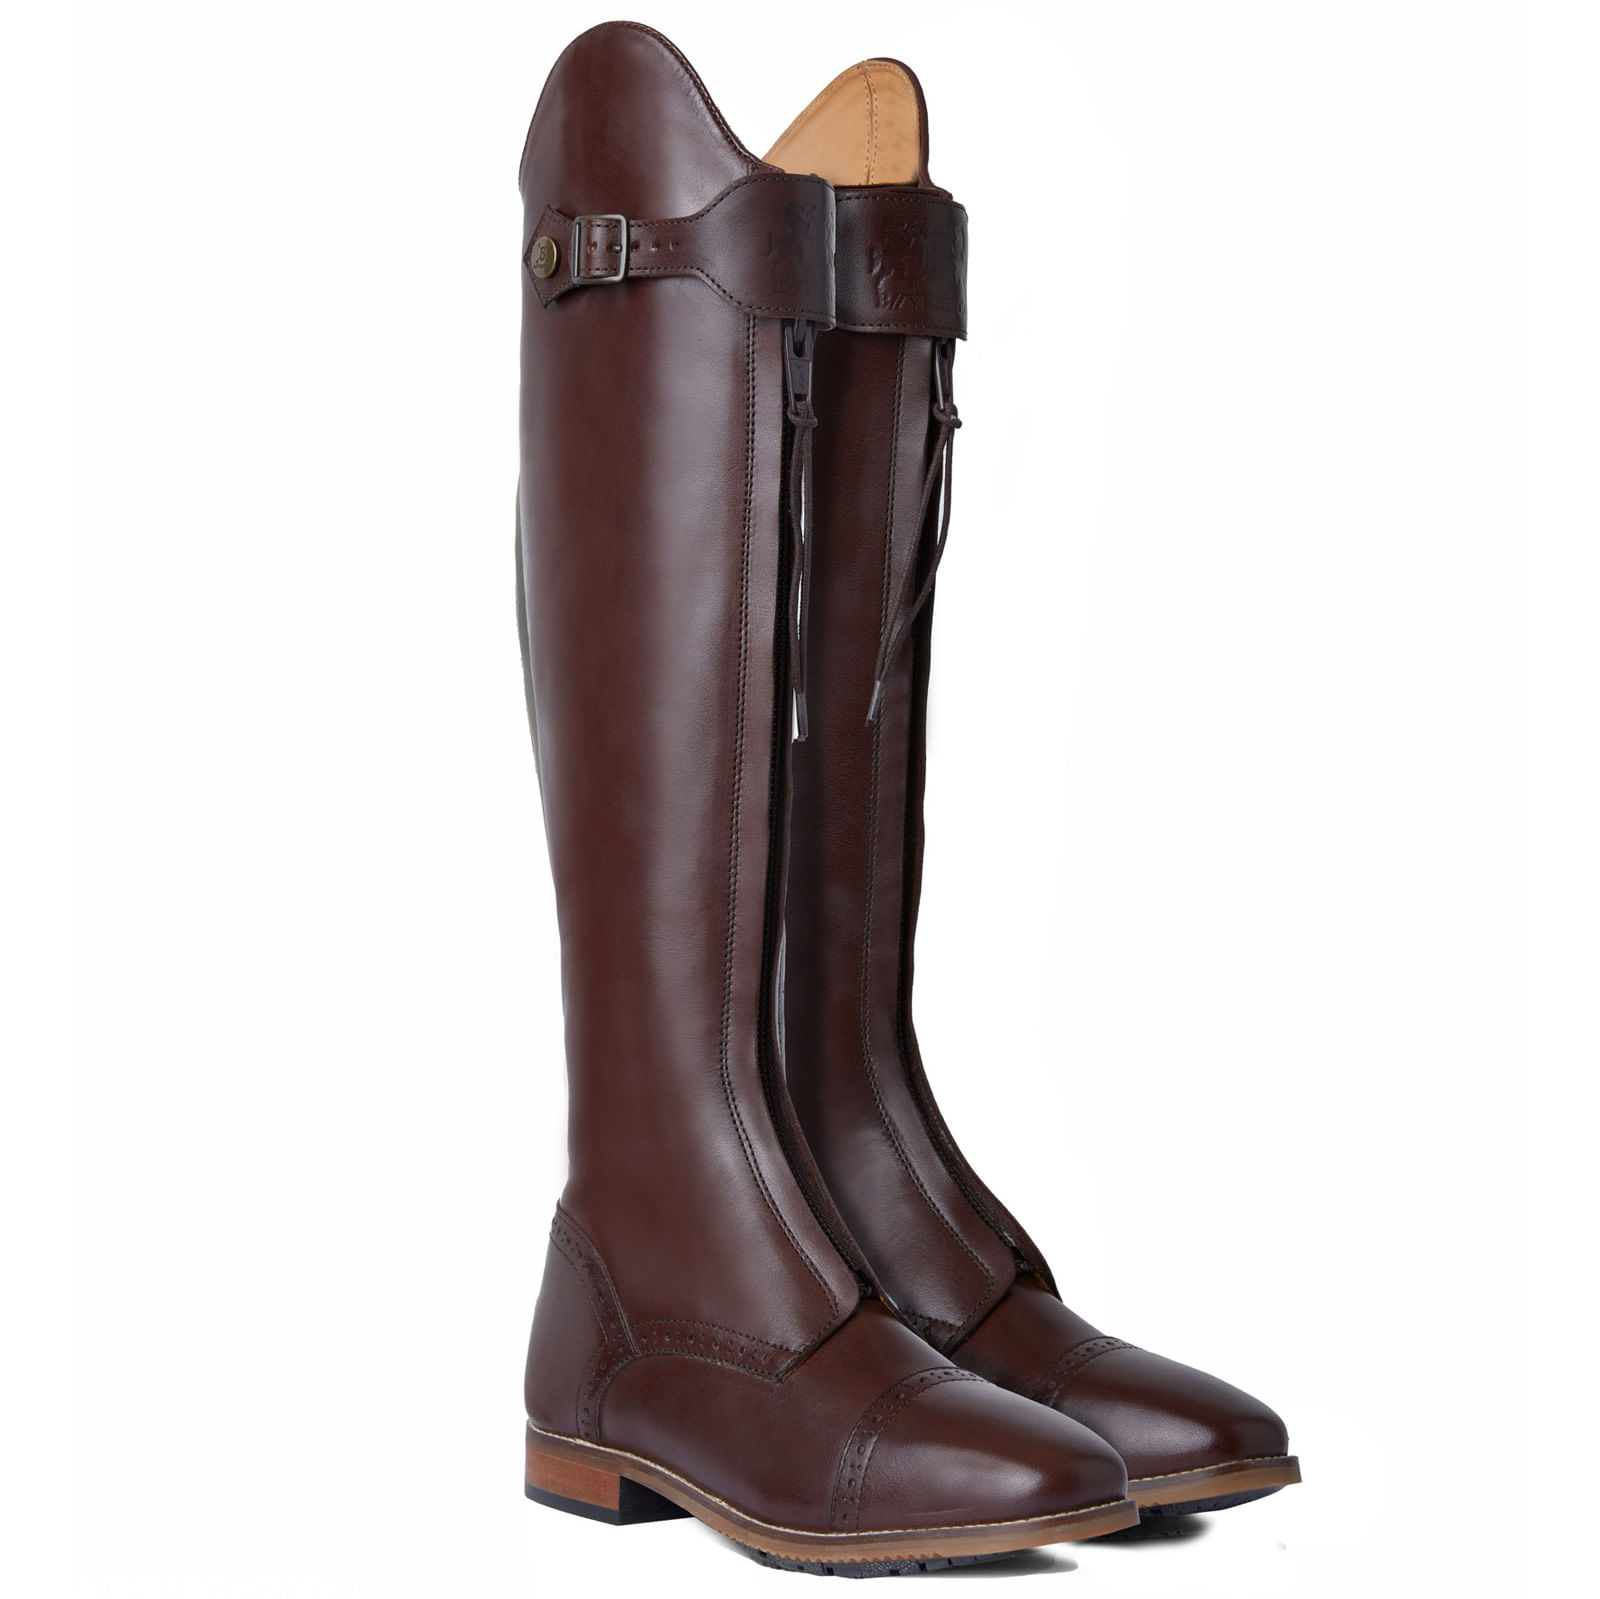 B Vertigo Canopus Front Zip Tall Boots - Dark Brown - Horze-39109-DBR